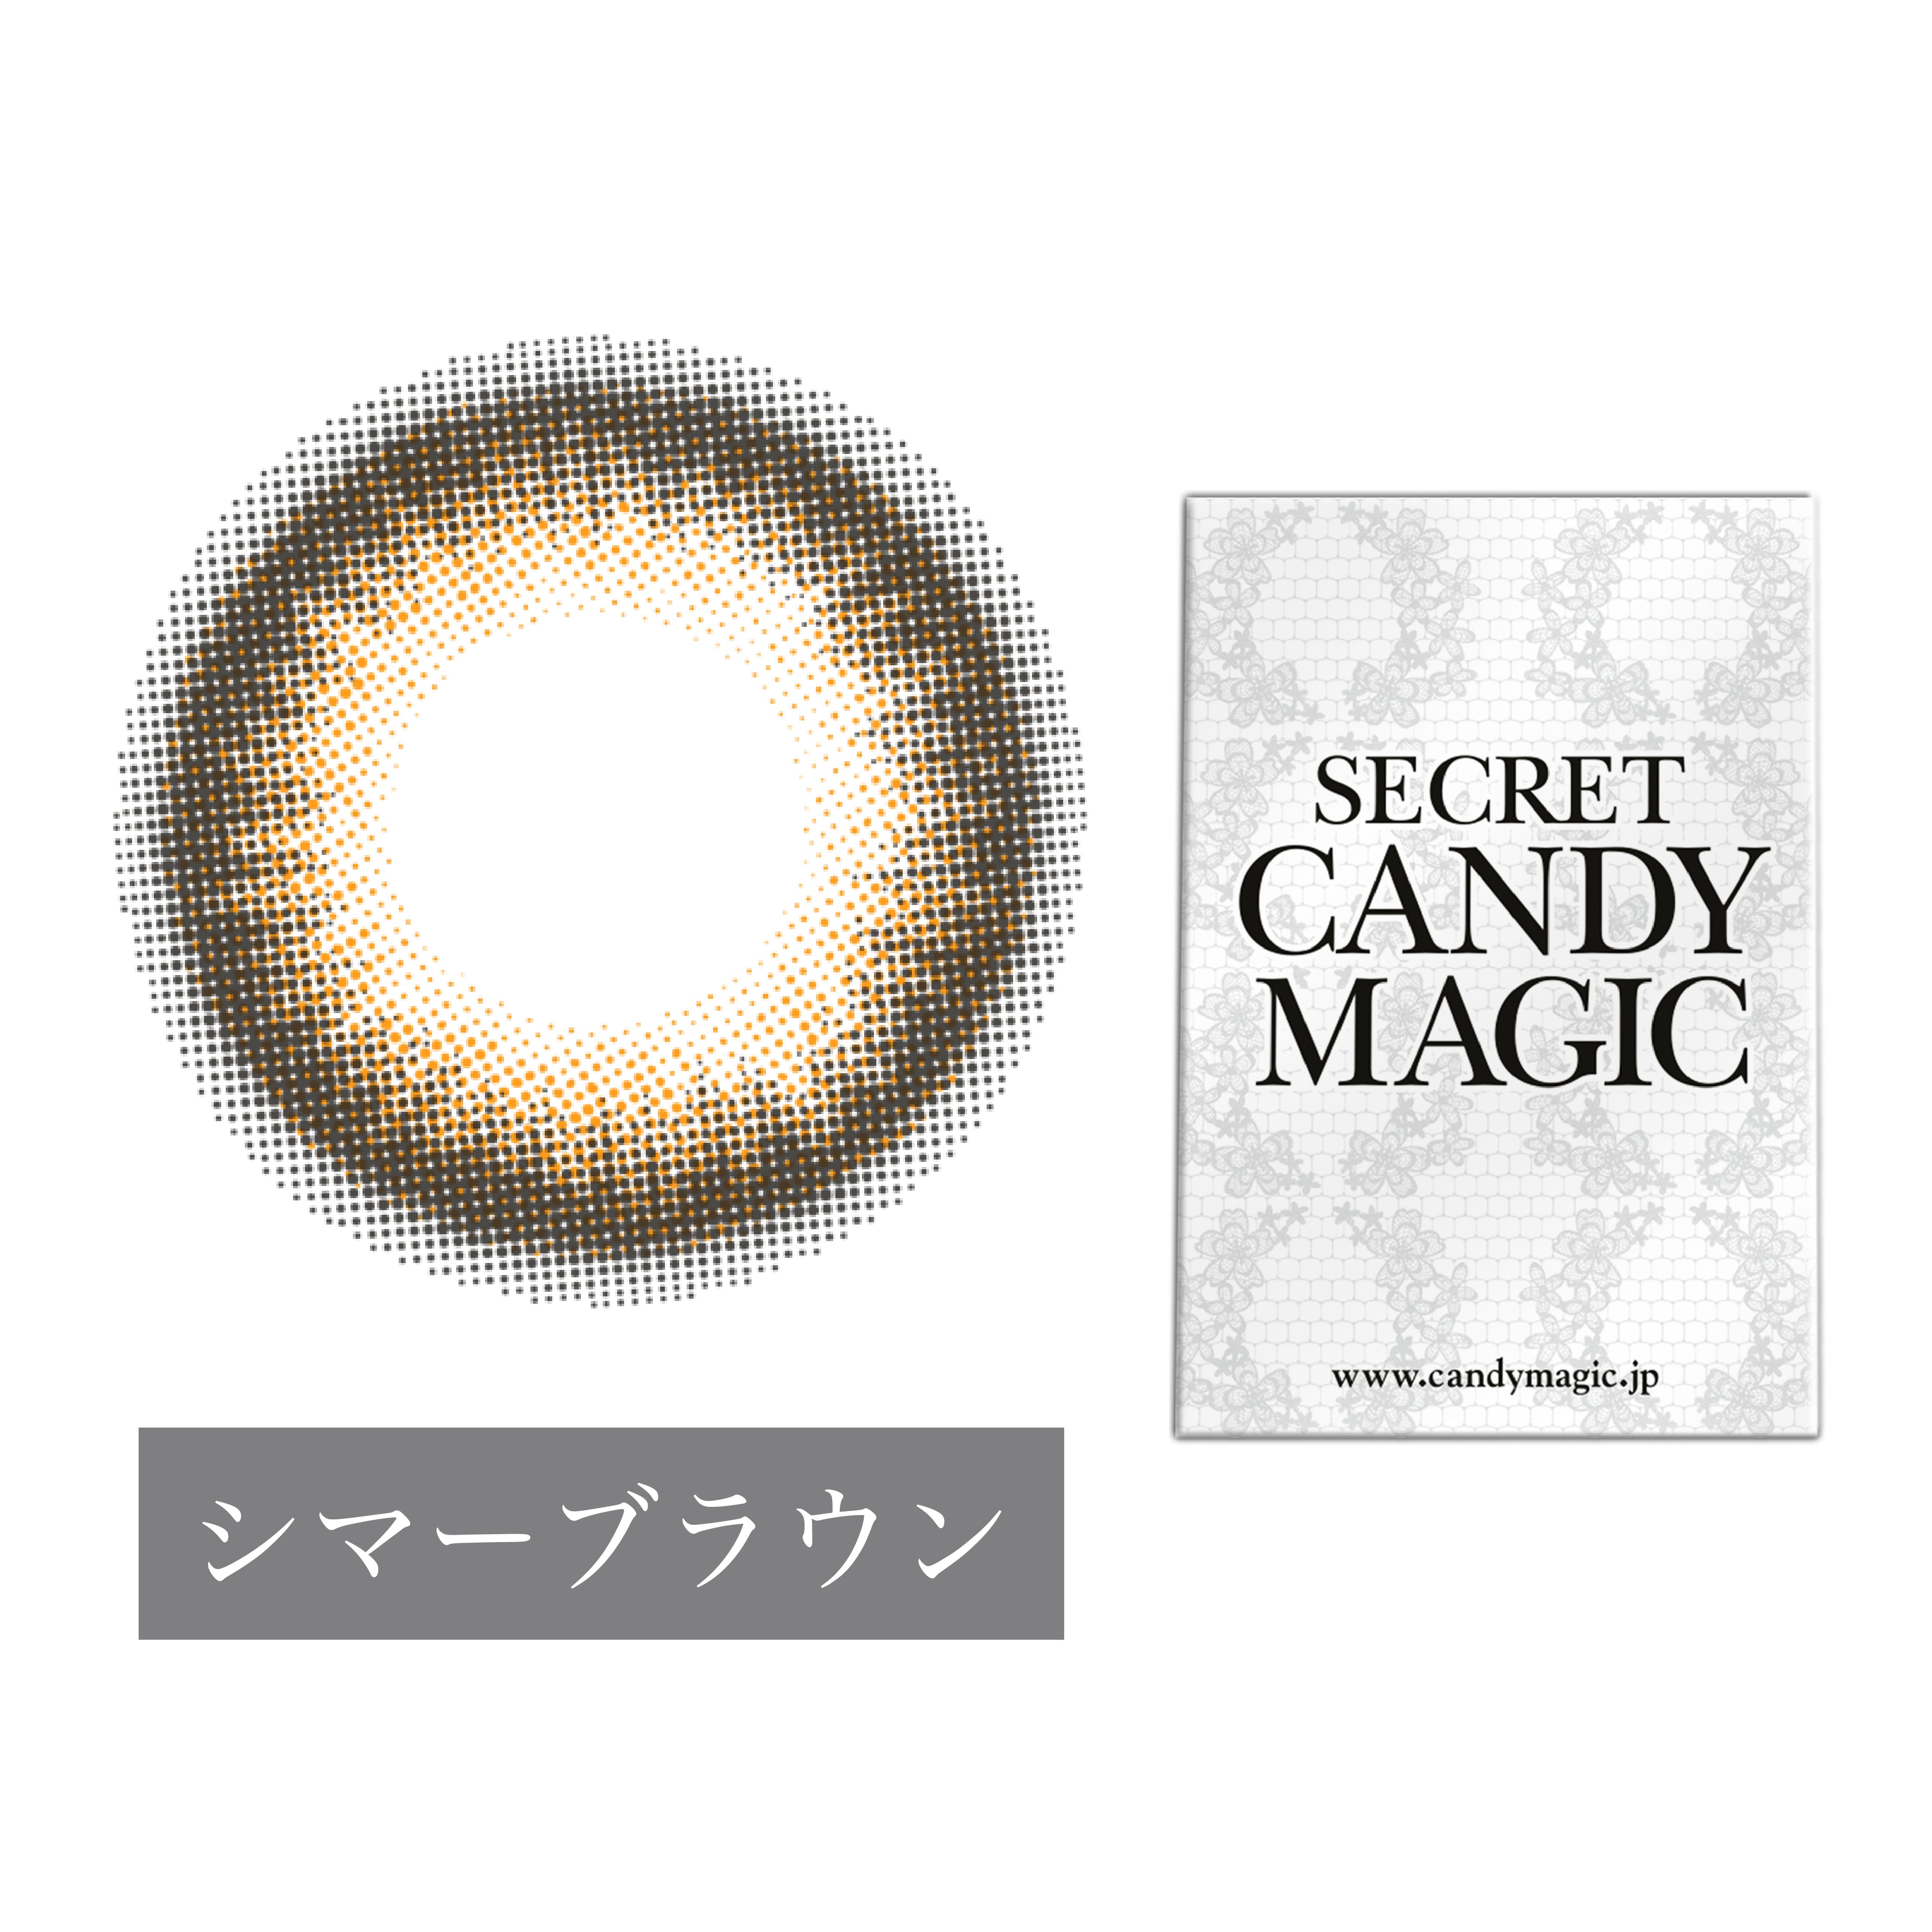 カラーコンタクトレンズ、secret candymagic シマーブラウン | 1monthの追加の参考画像5枚目